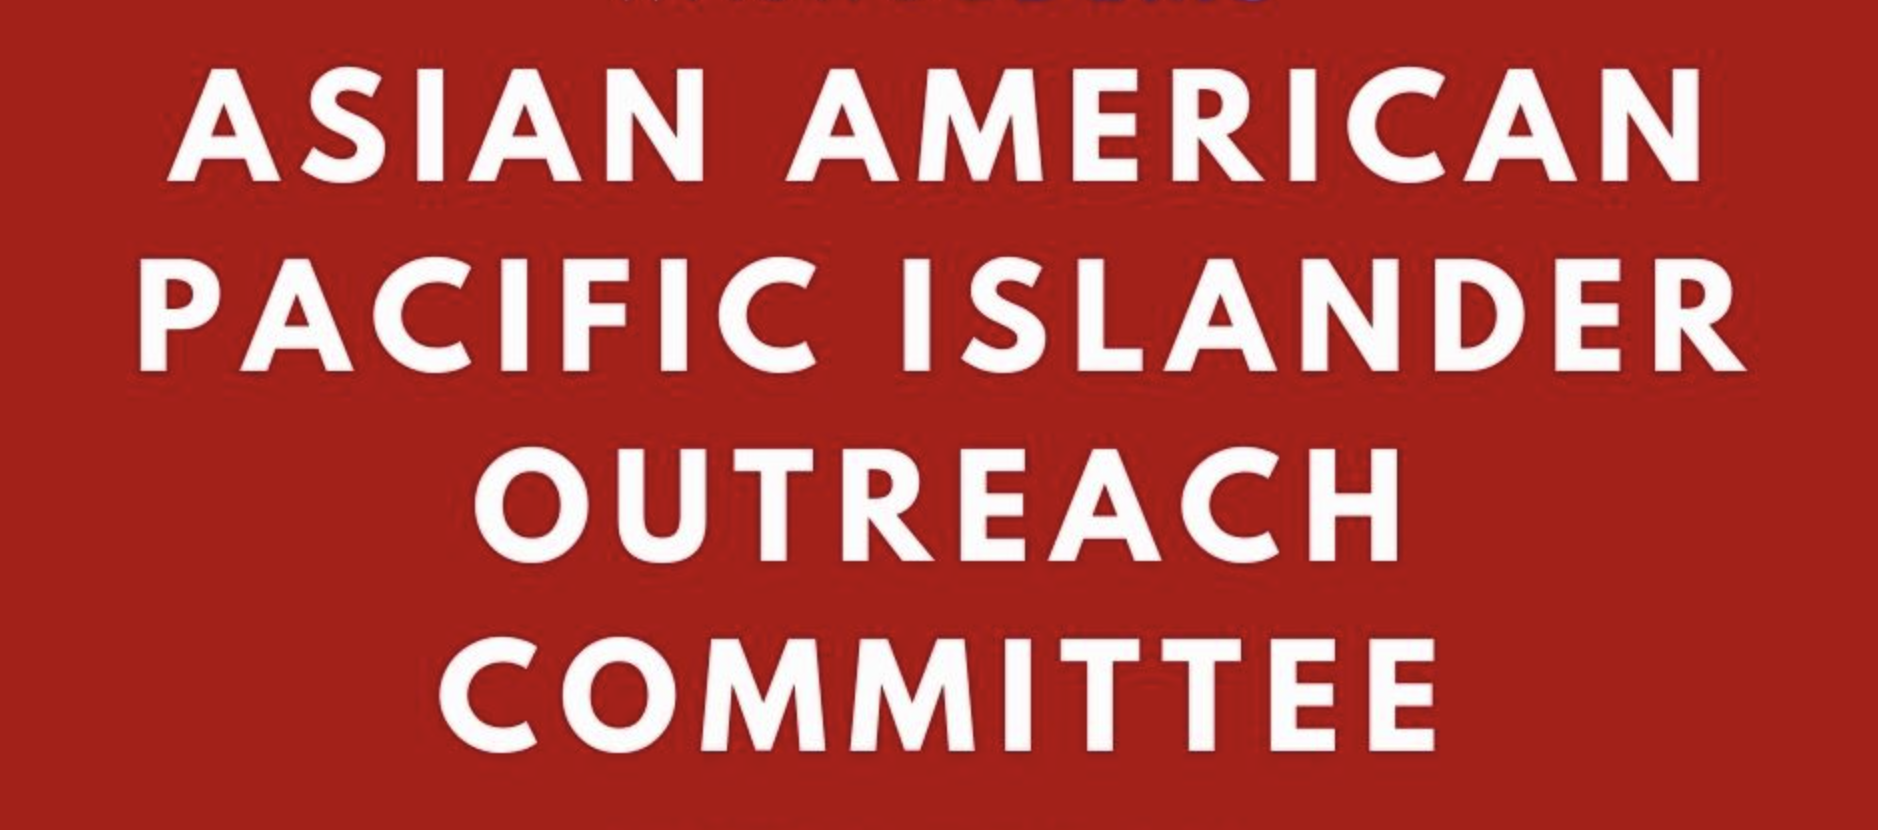 Comité de Alcance de los Isleños del Pacífico Asiático Americano